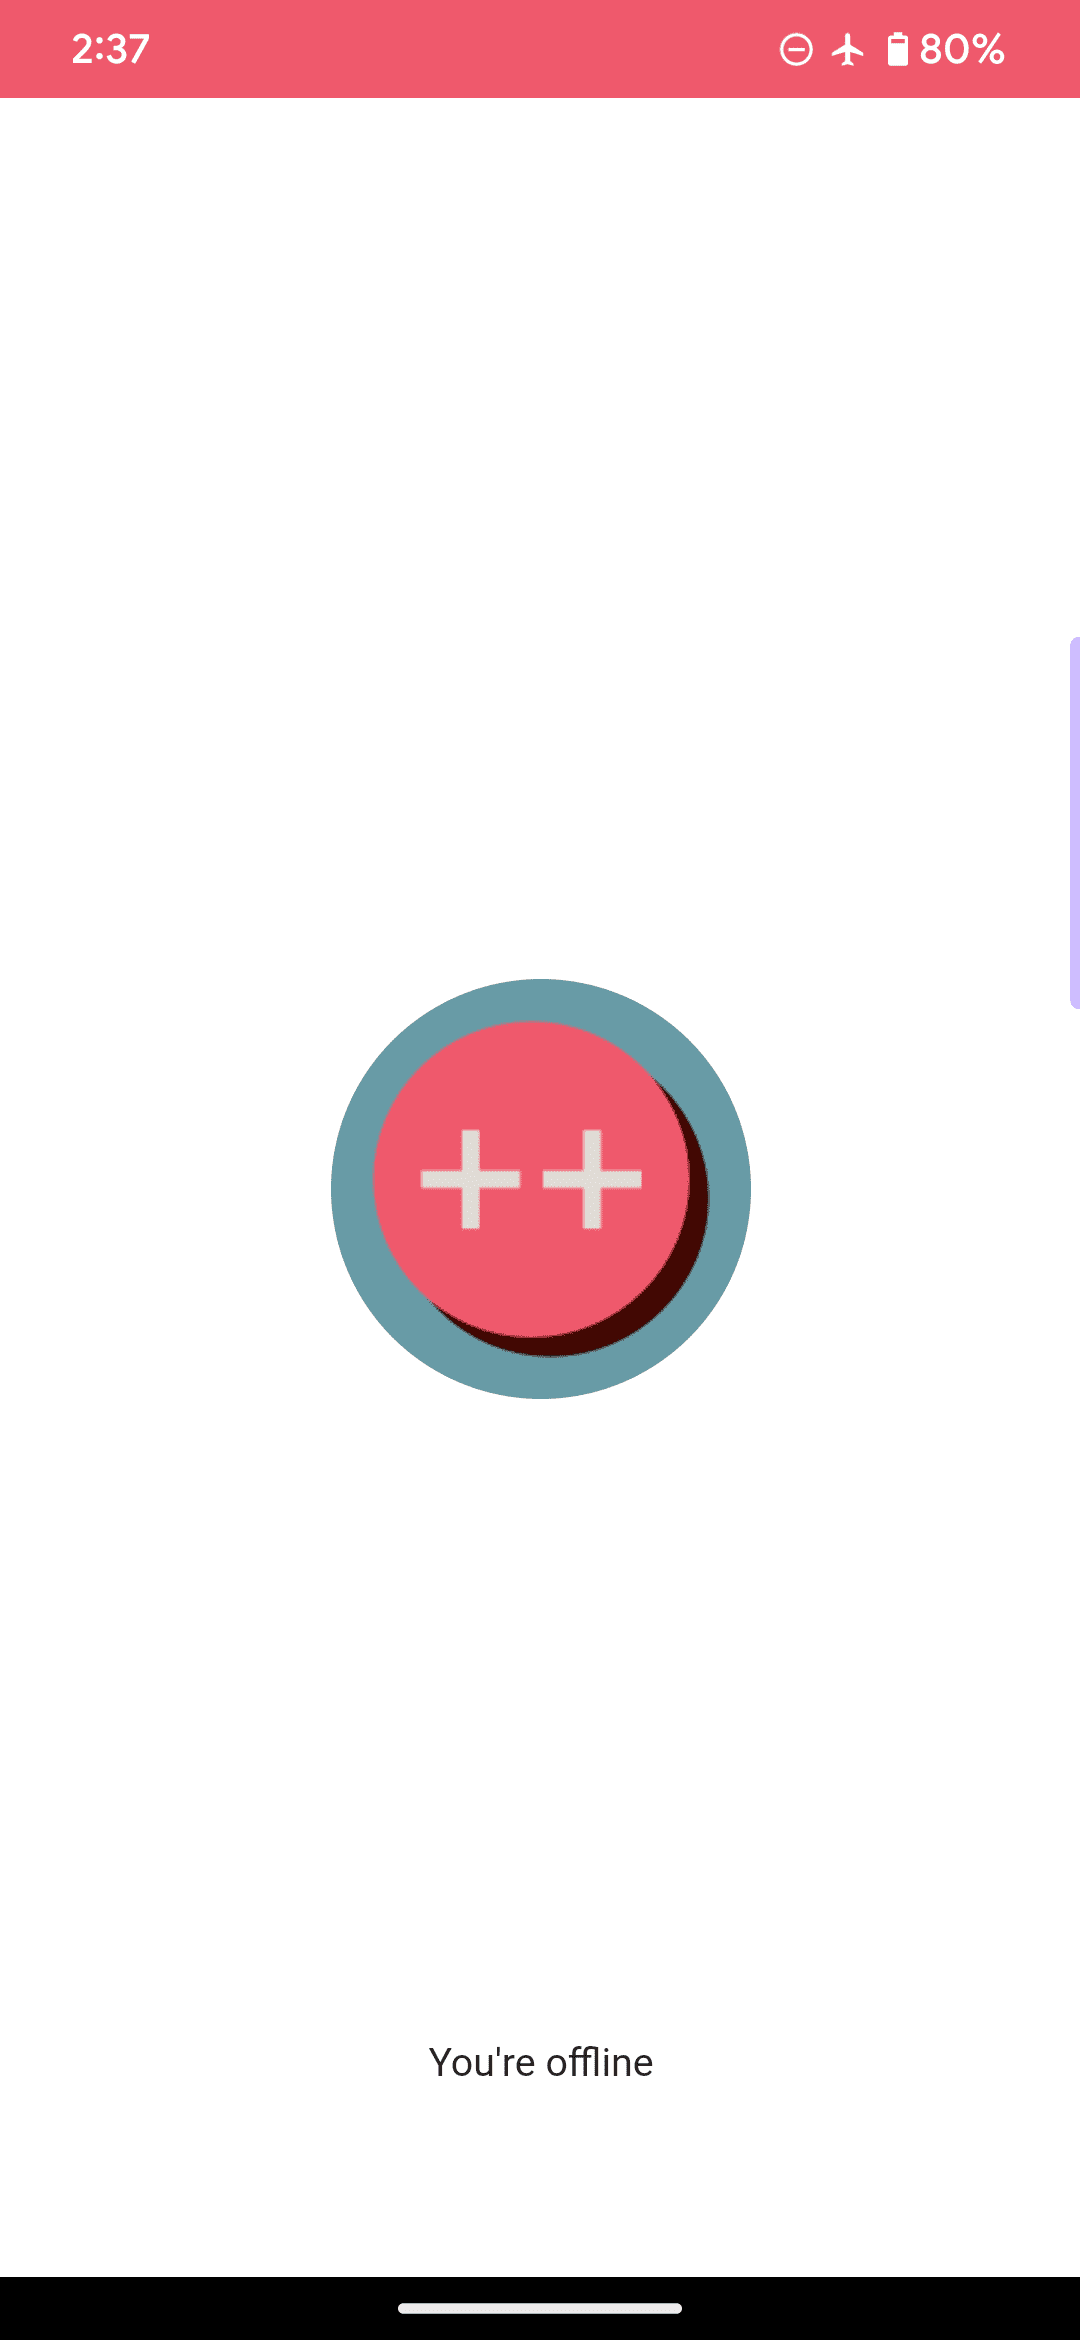 Domyślna strona offline dla przykładowej aplikacji internetowej. Logo to różowe kółko i 2 znaki plusa oraz komunikat „Jesteś offline”.